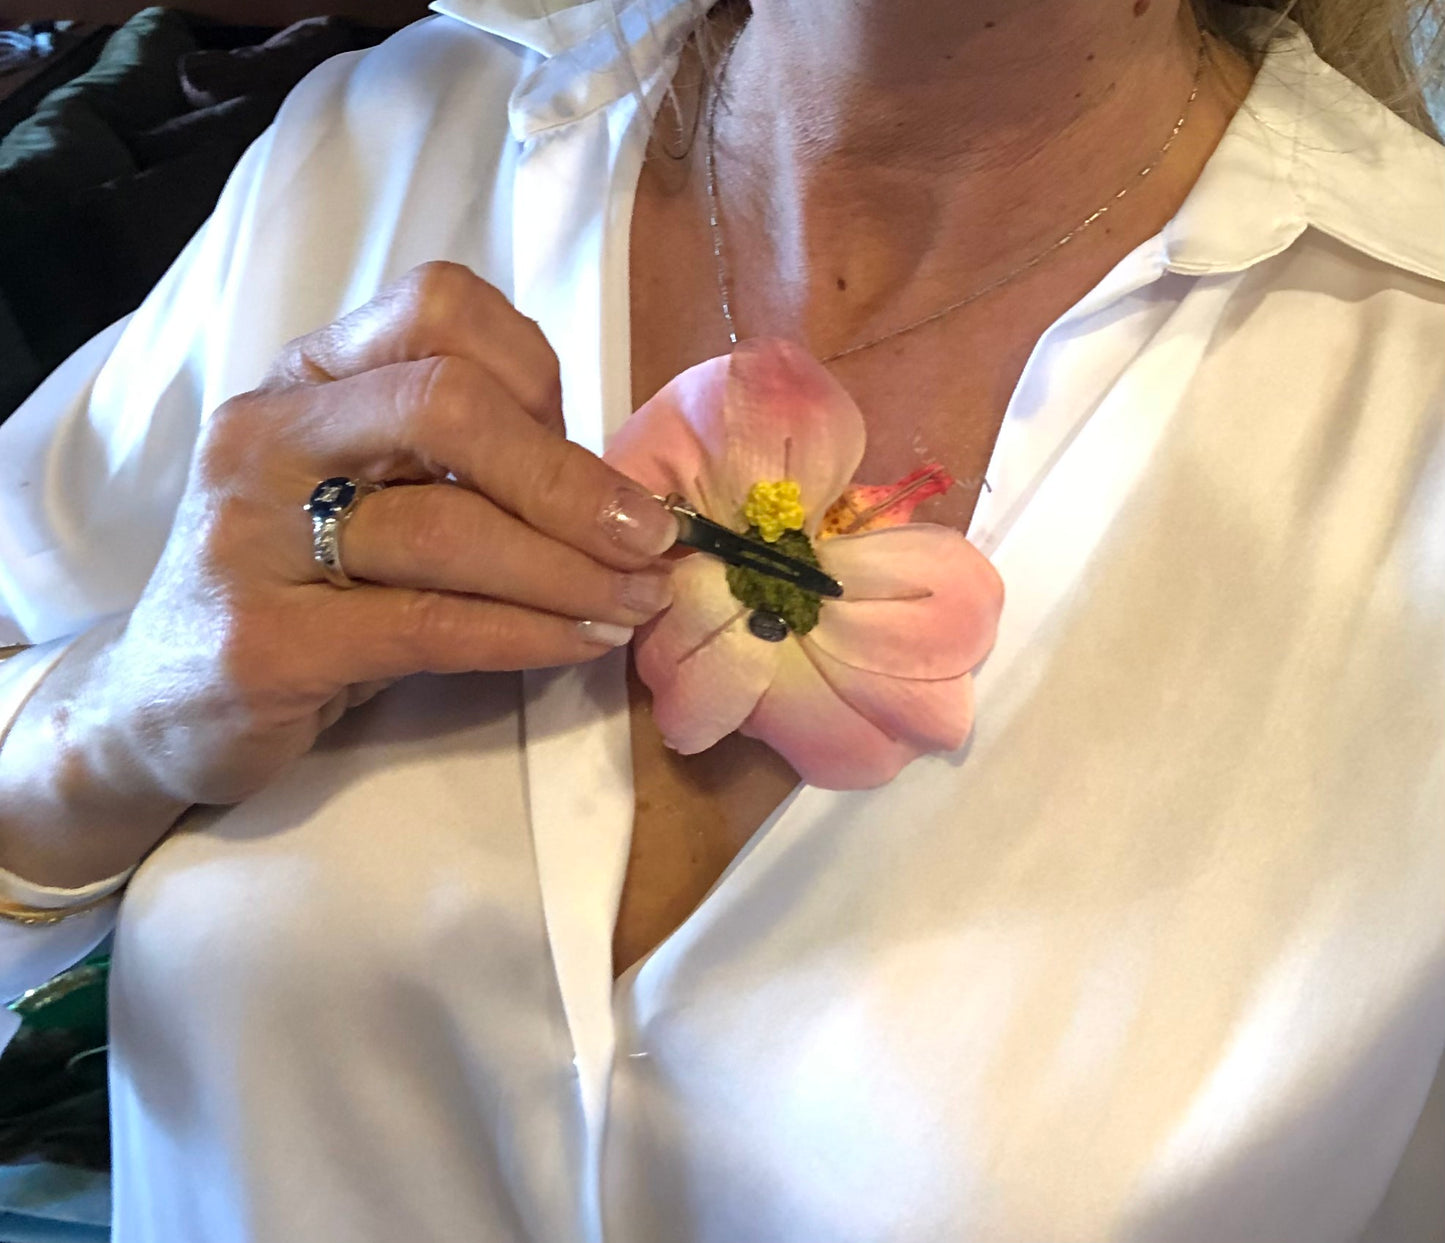 Karin's Garden Clip pour orchidée Phalaenopsis de 3 1/2" facile à pincer style fait à la main aux États-Unis